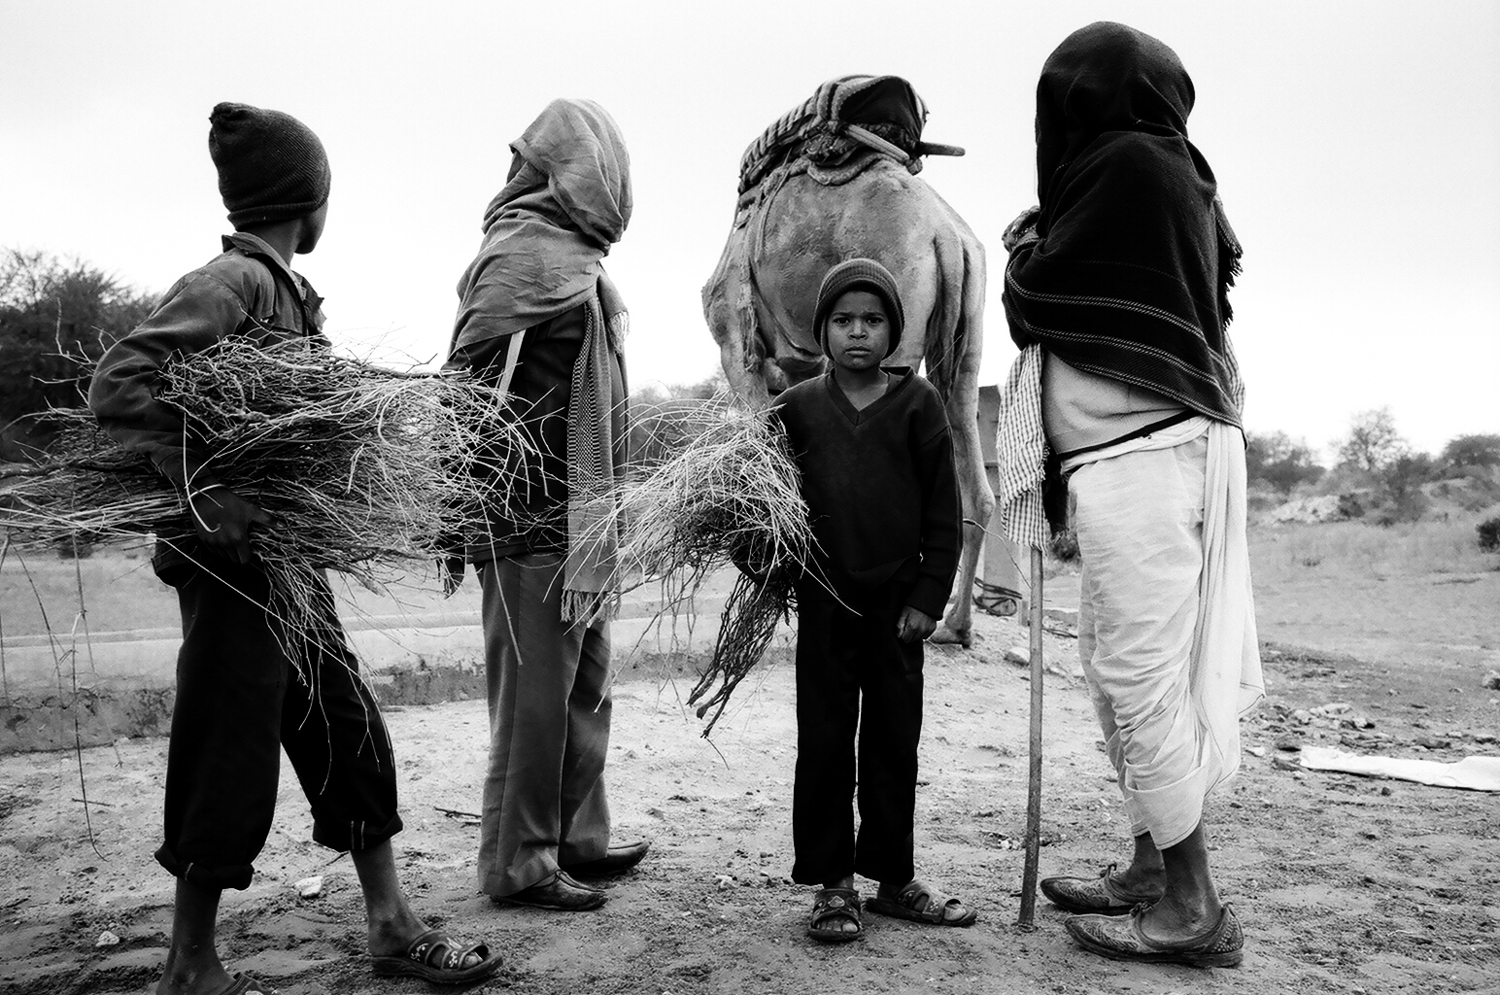 Nomads. Thar Desert, Rajasthan, 2013